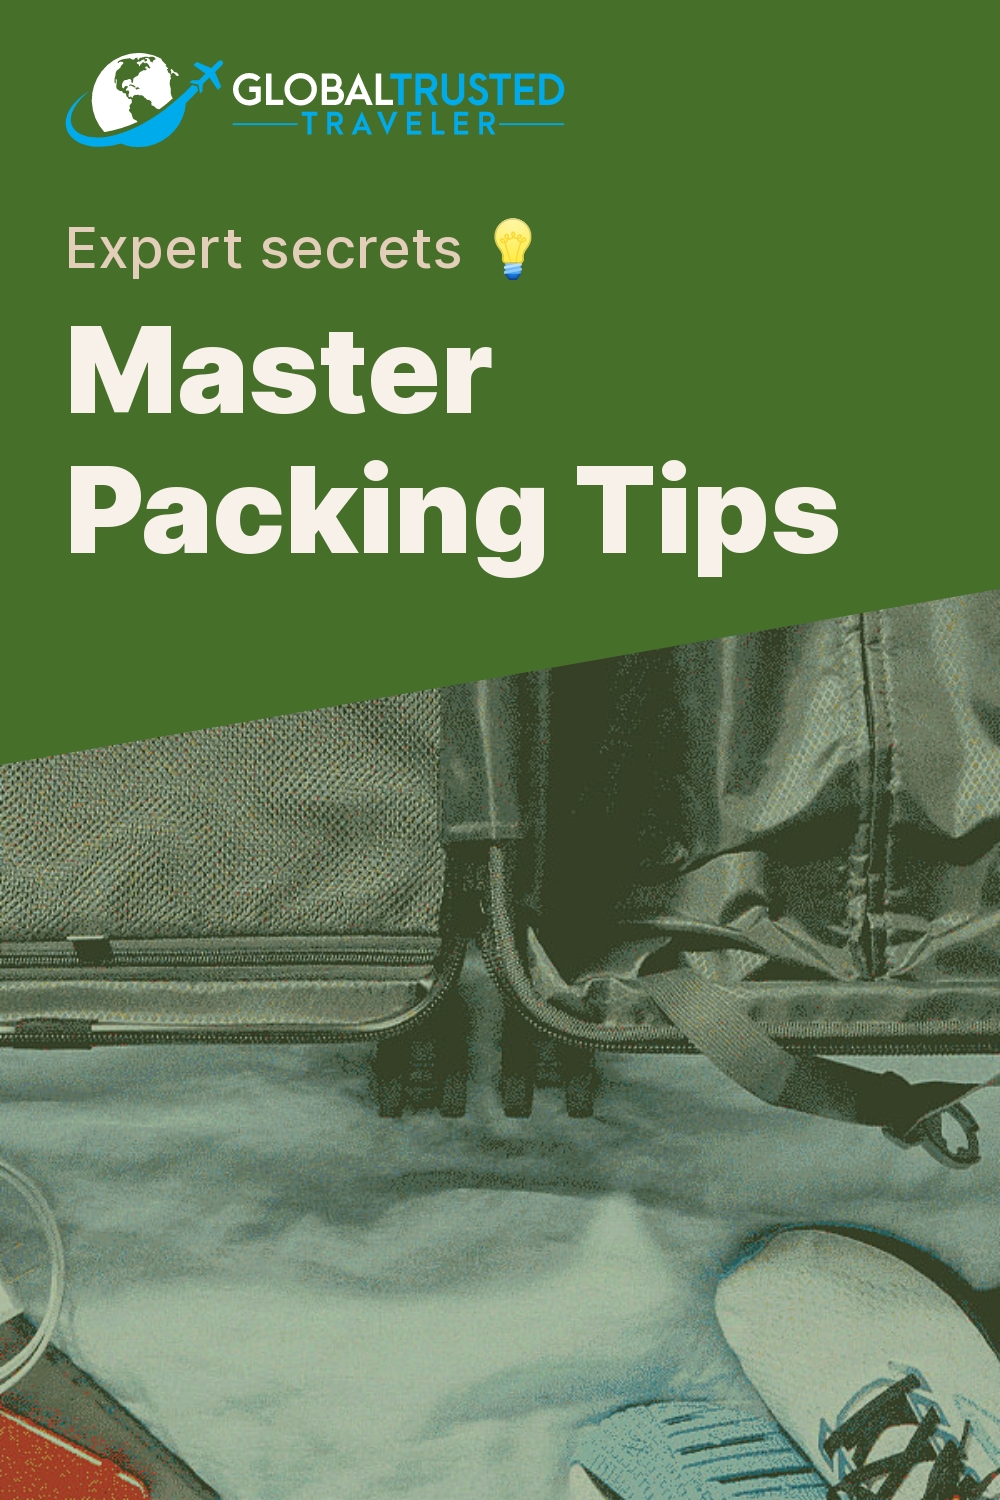 Master Packing Tips - Expert secrets 💡